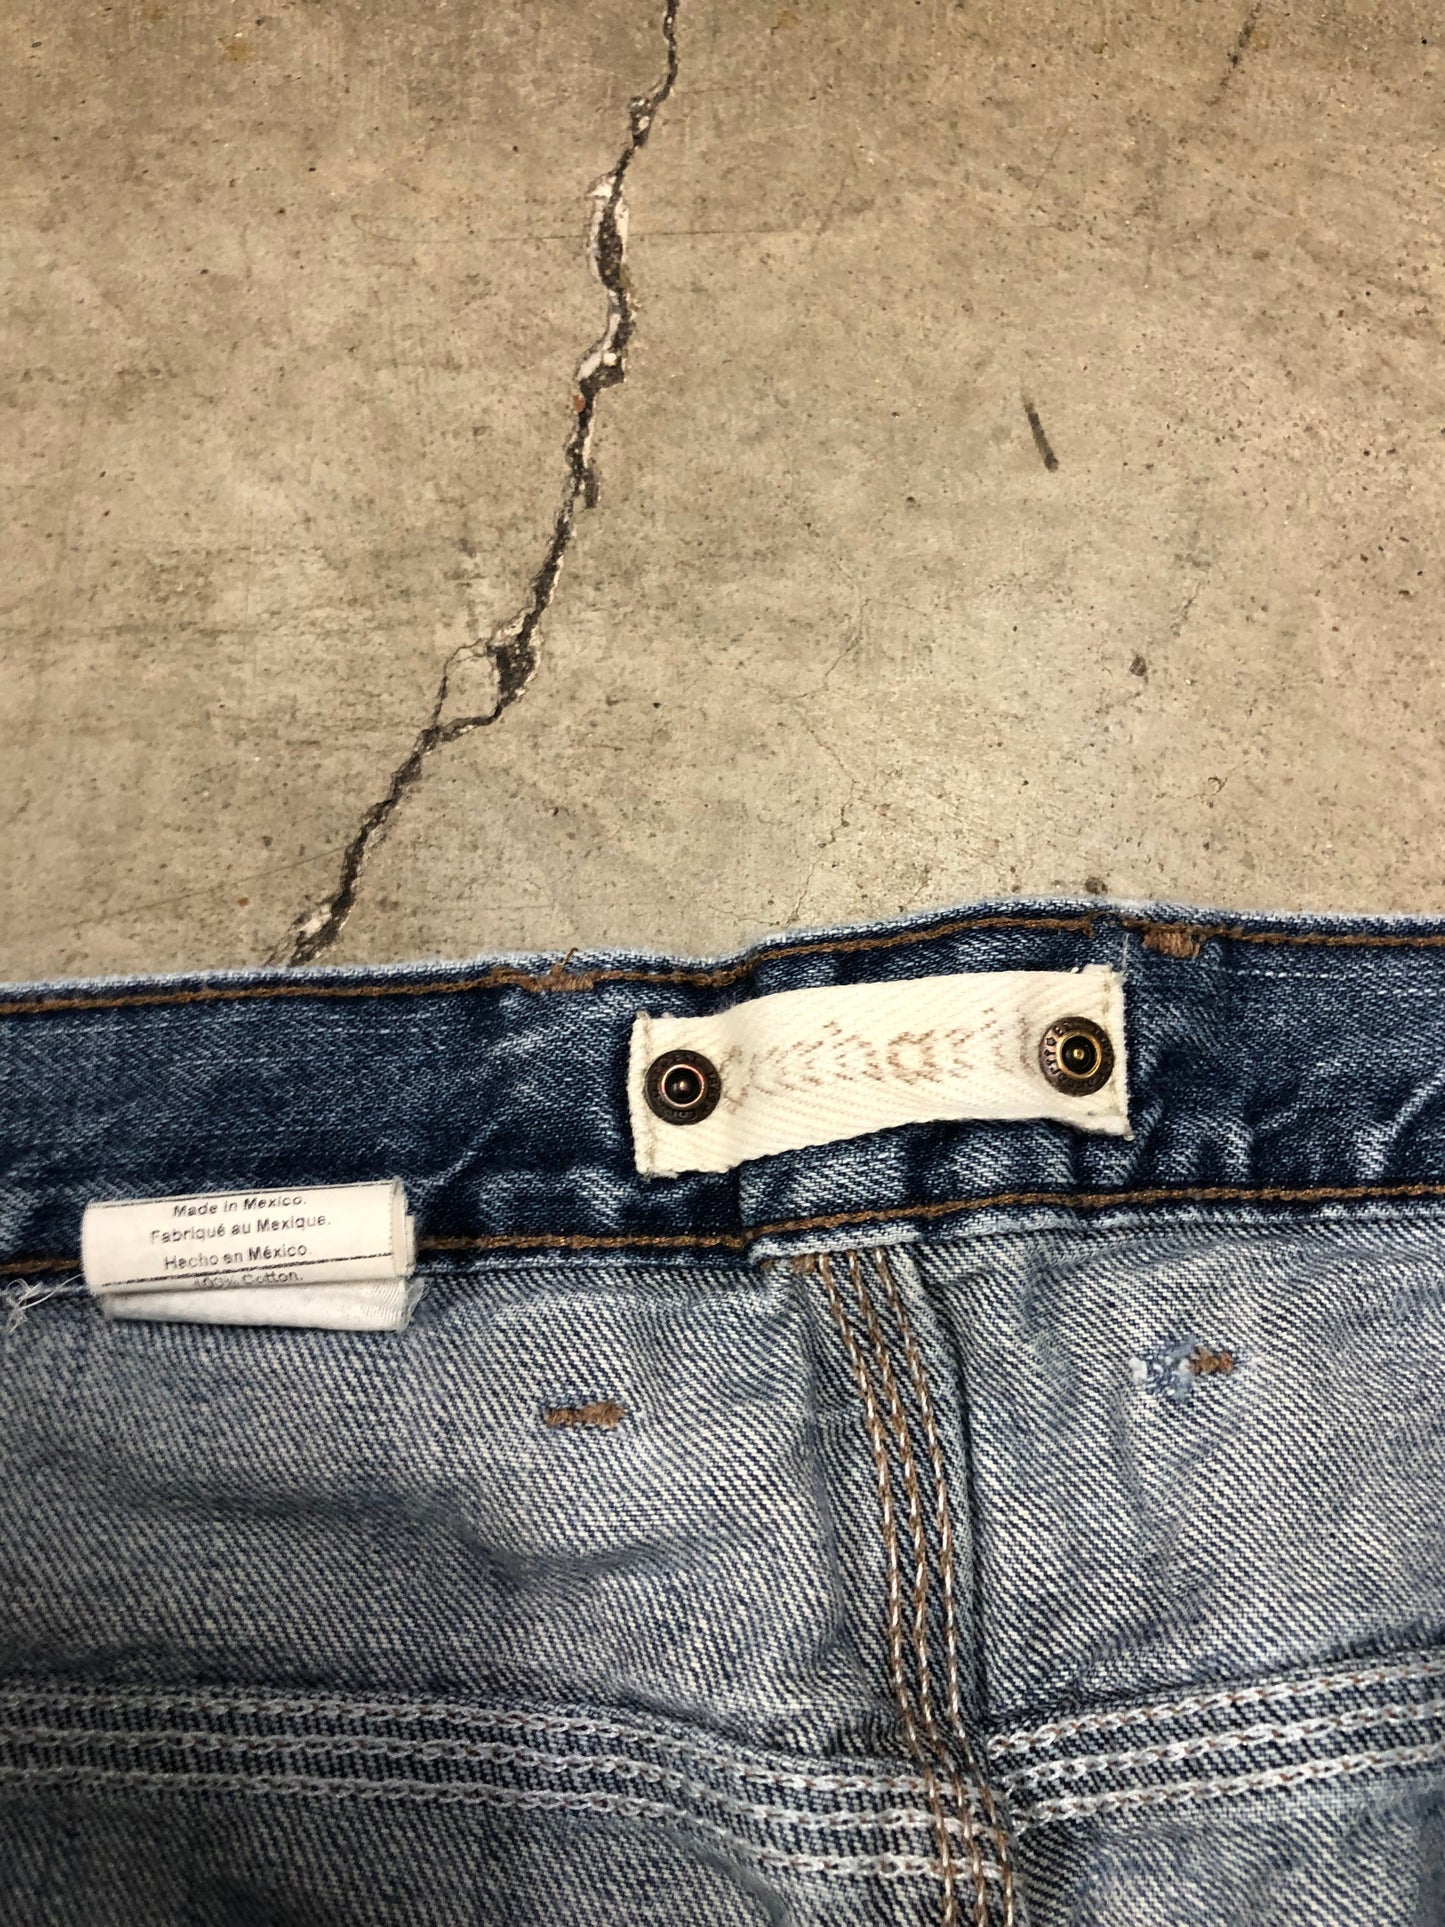 Carhartt Workwear Denim Jeans Sz 38x30